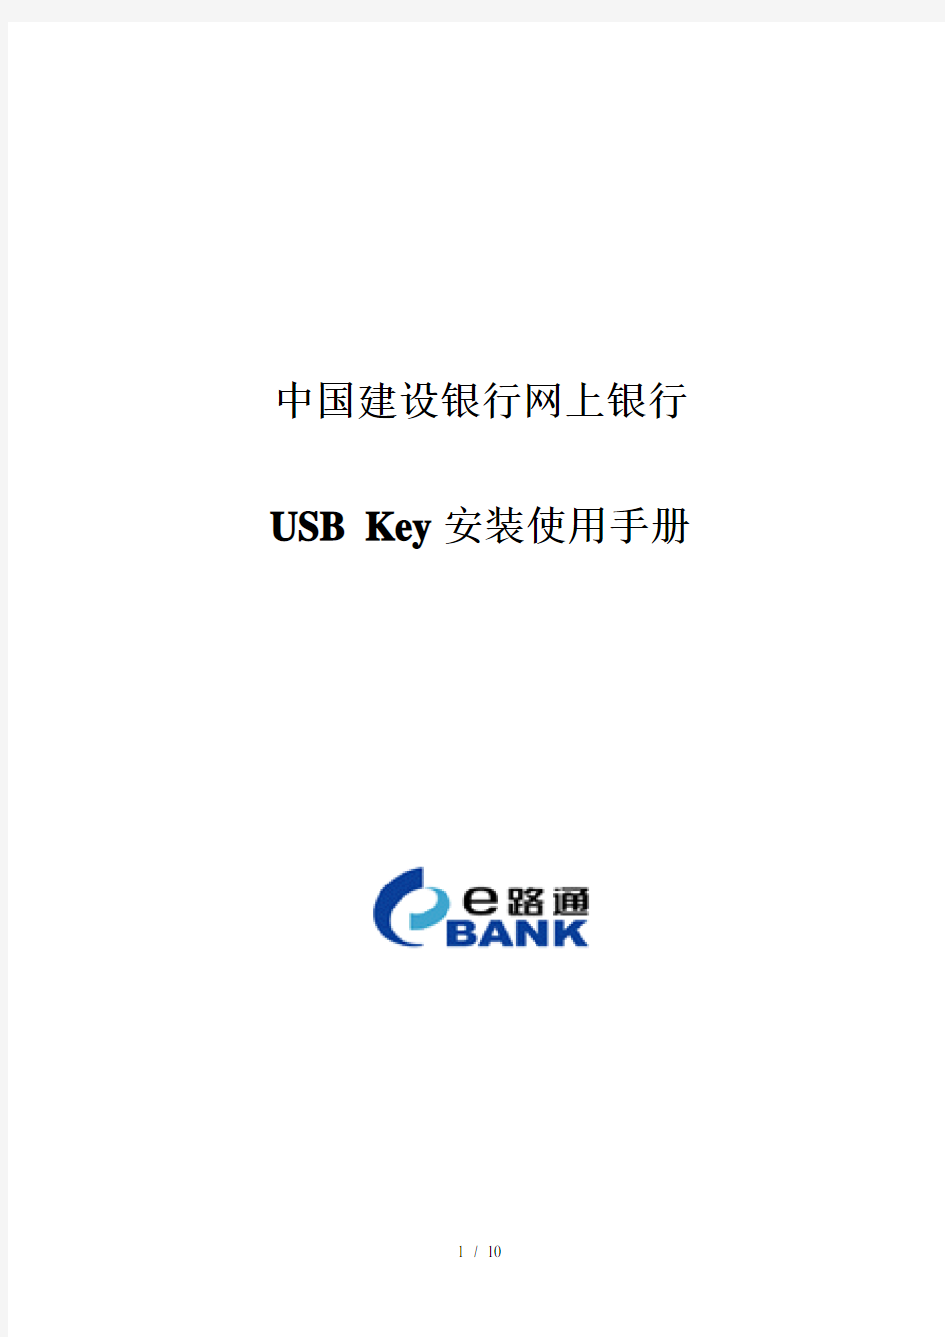 中国建设银行网上银行USB_Key安装使用说明1